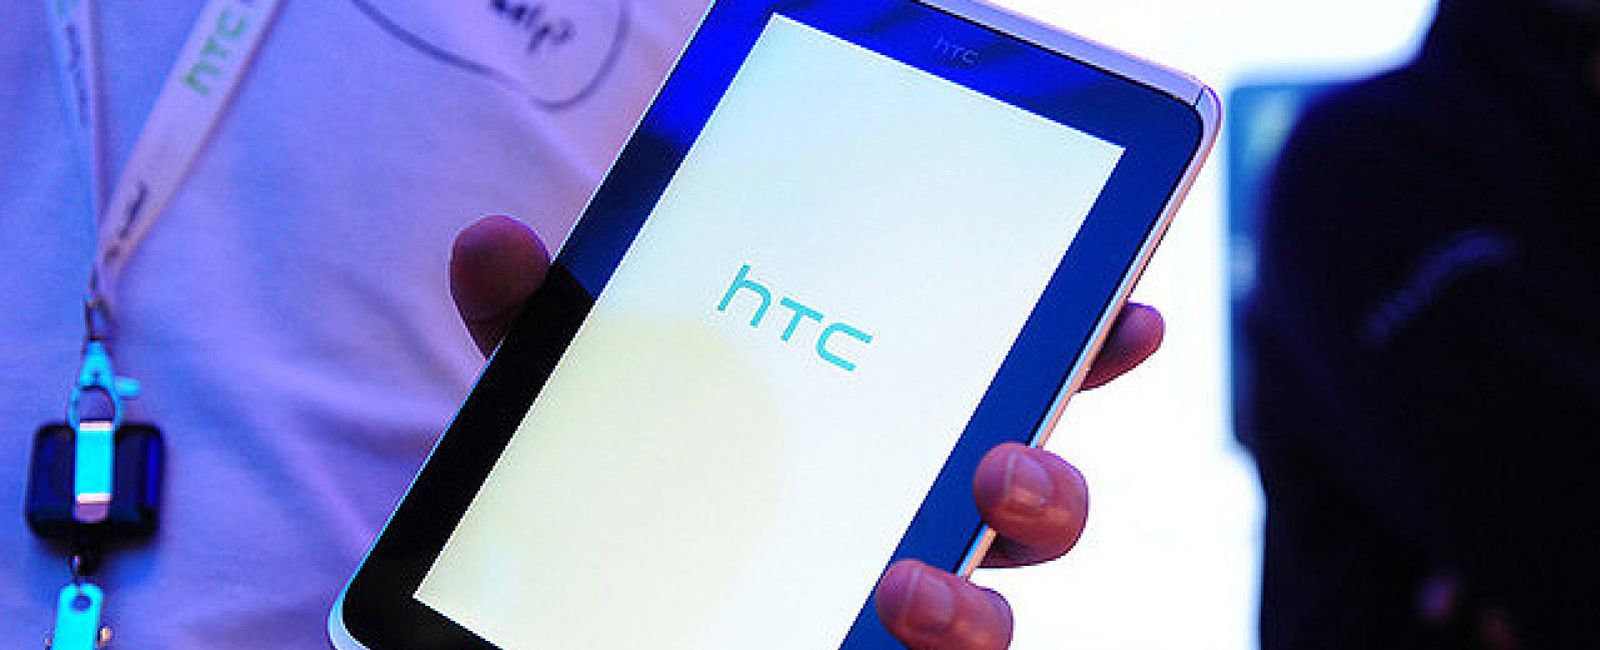 Foto: HTC prepara dos tabletas de 7 y 12 pulgadas con Windows RT